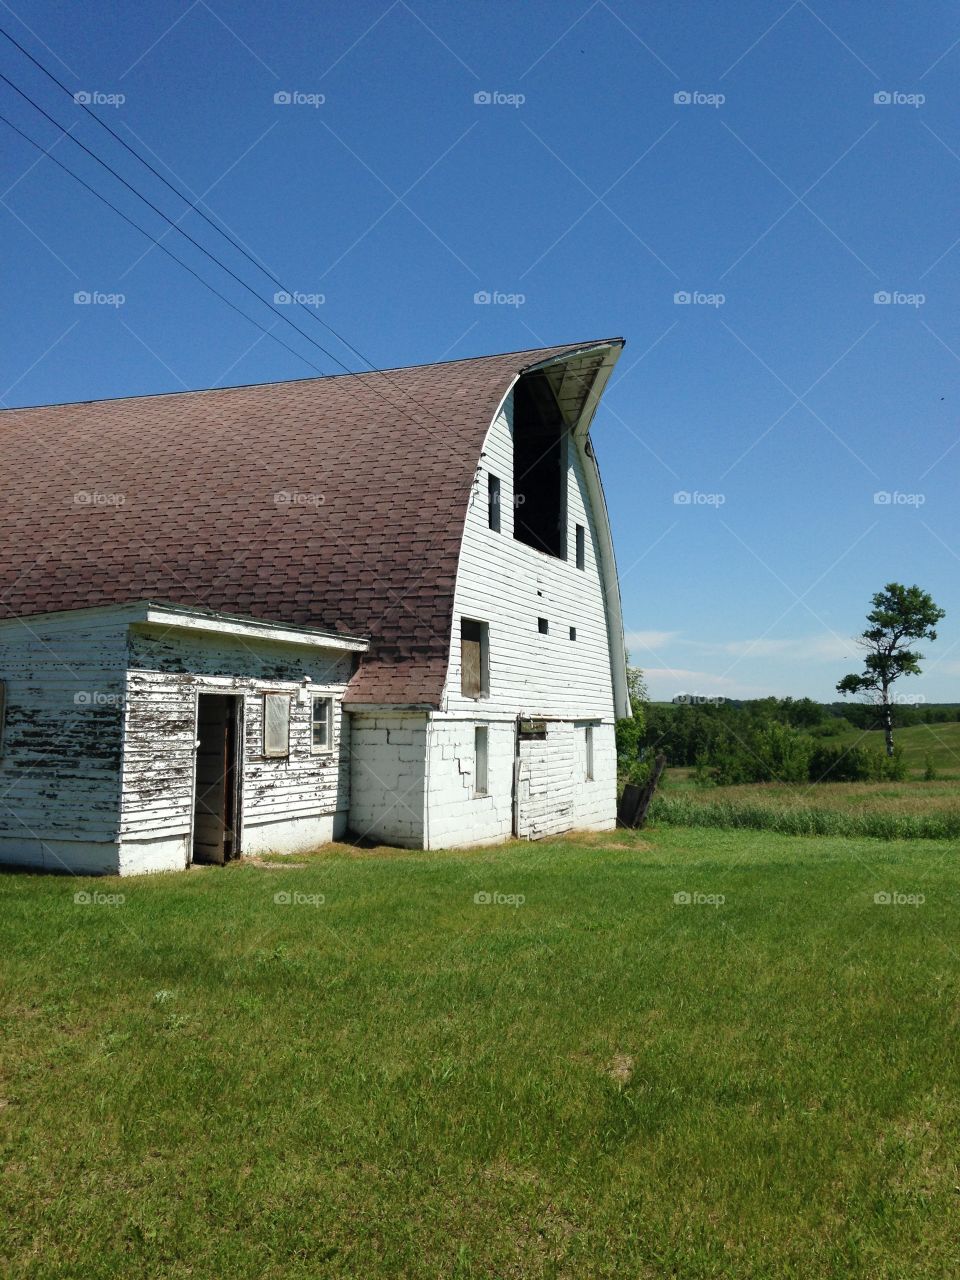 Old barn 